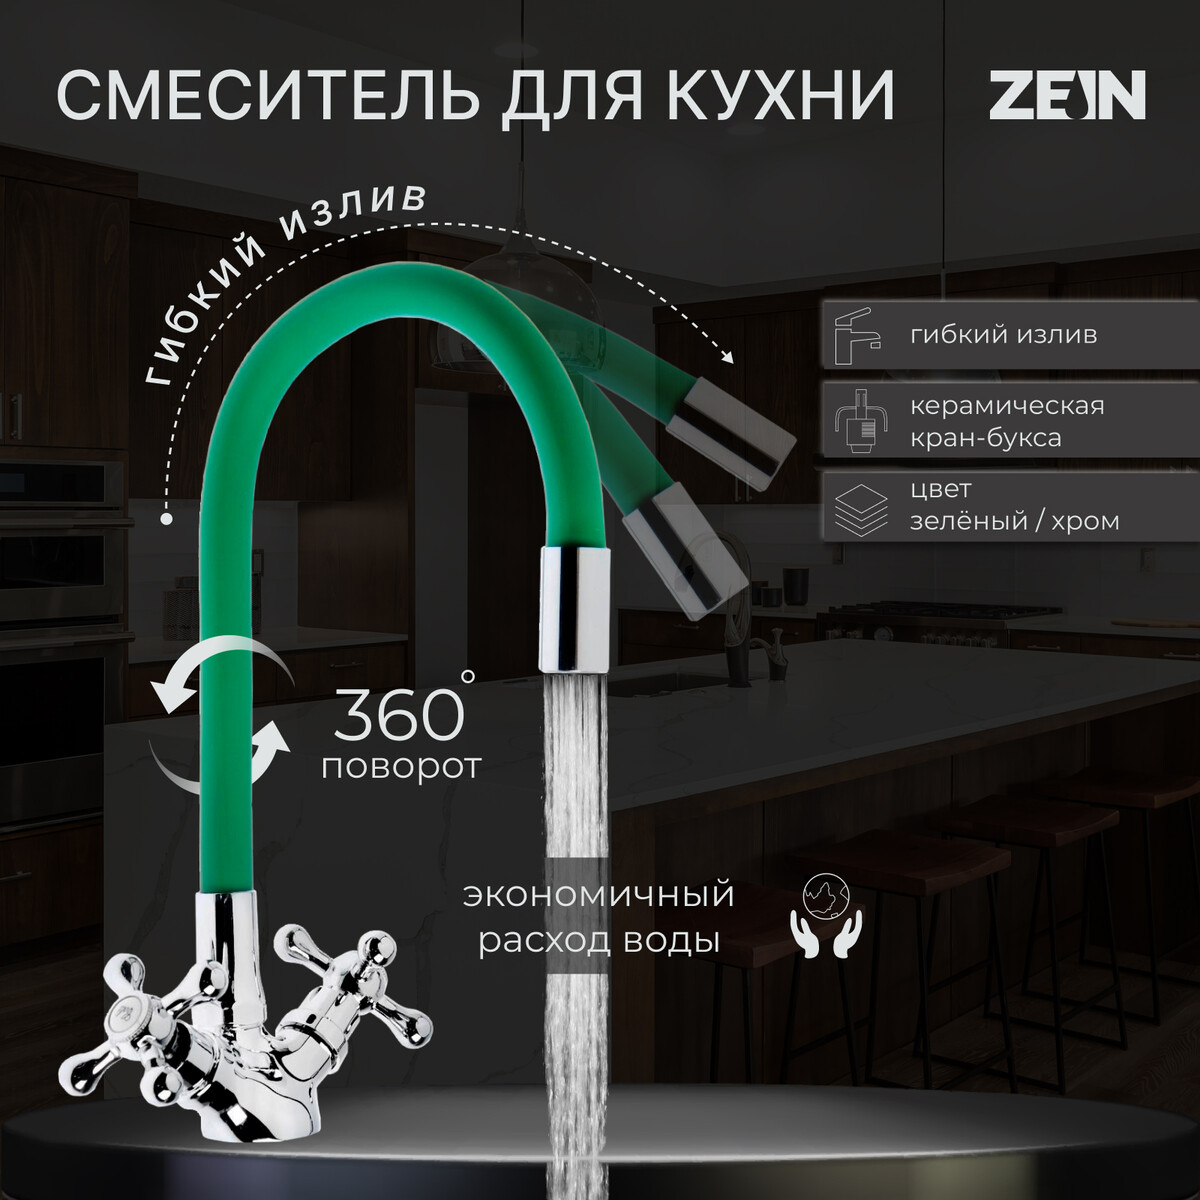 Смеситель для кухни zein z2102, двухвентильный, силиконовый излив, зеленый/хром смеситель hansgrohe logis для кухни